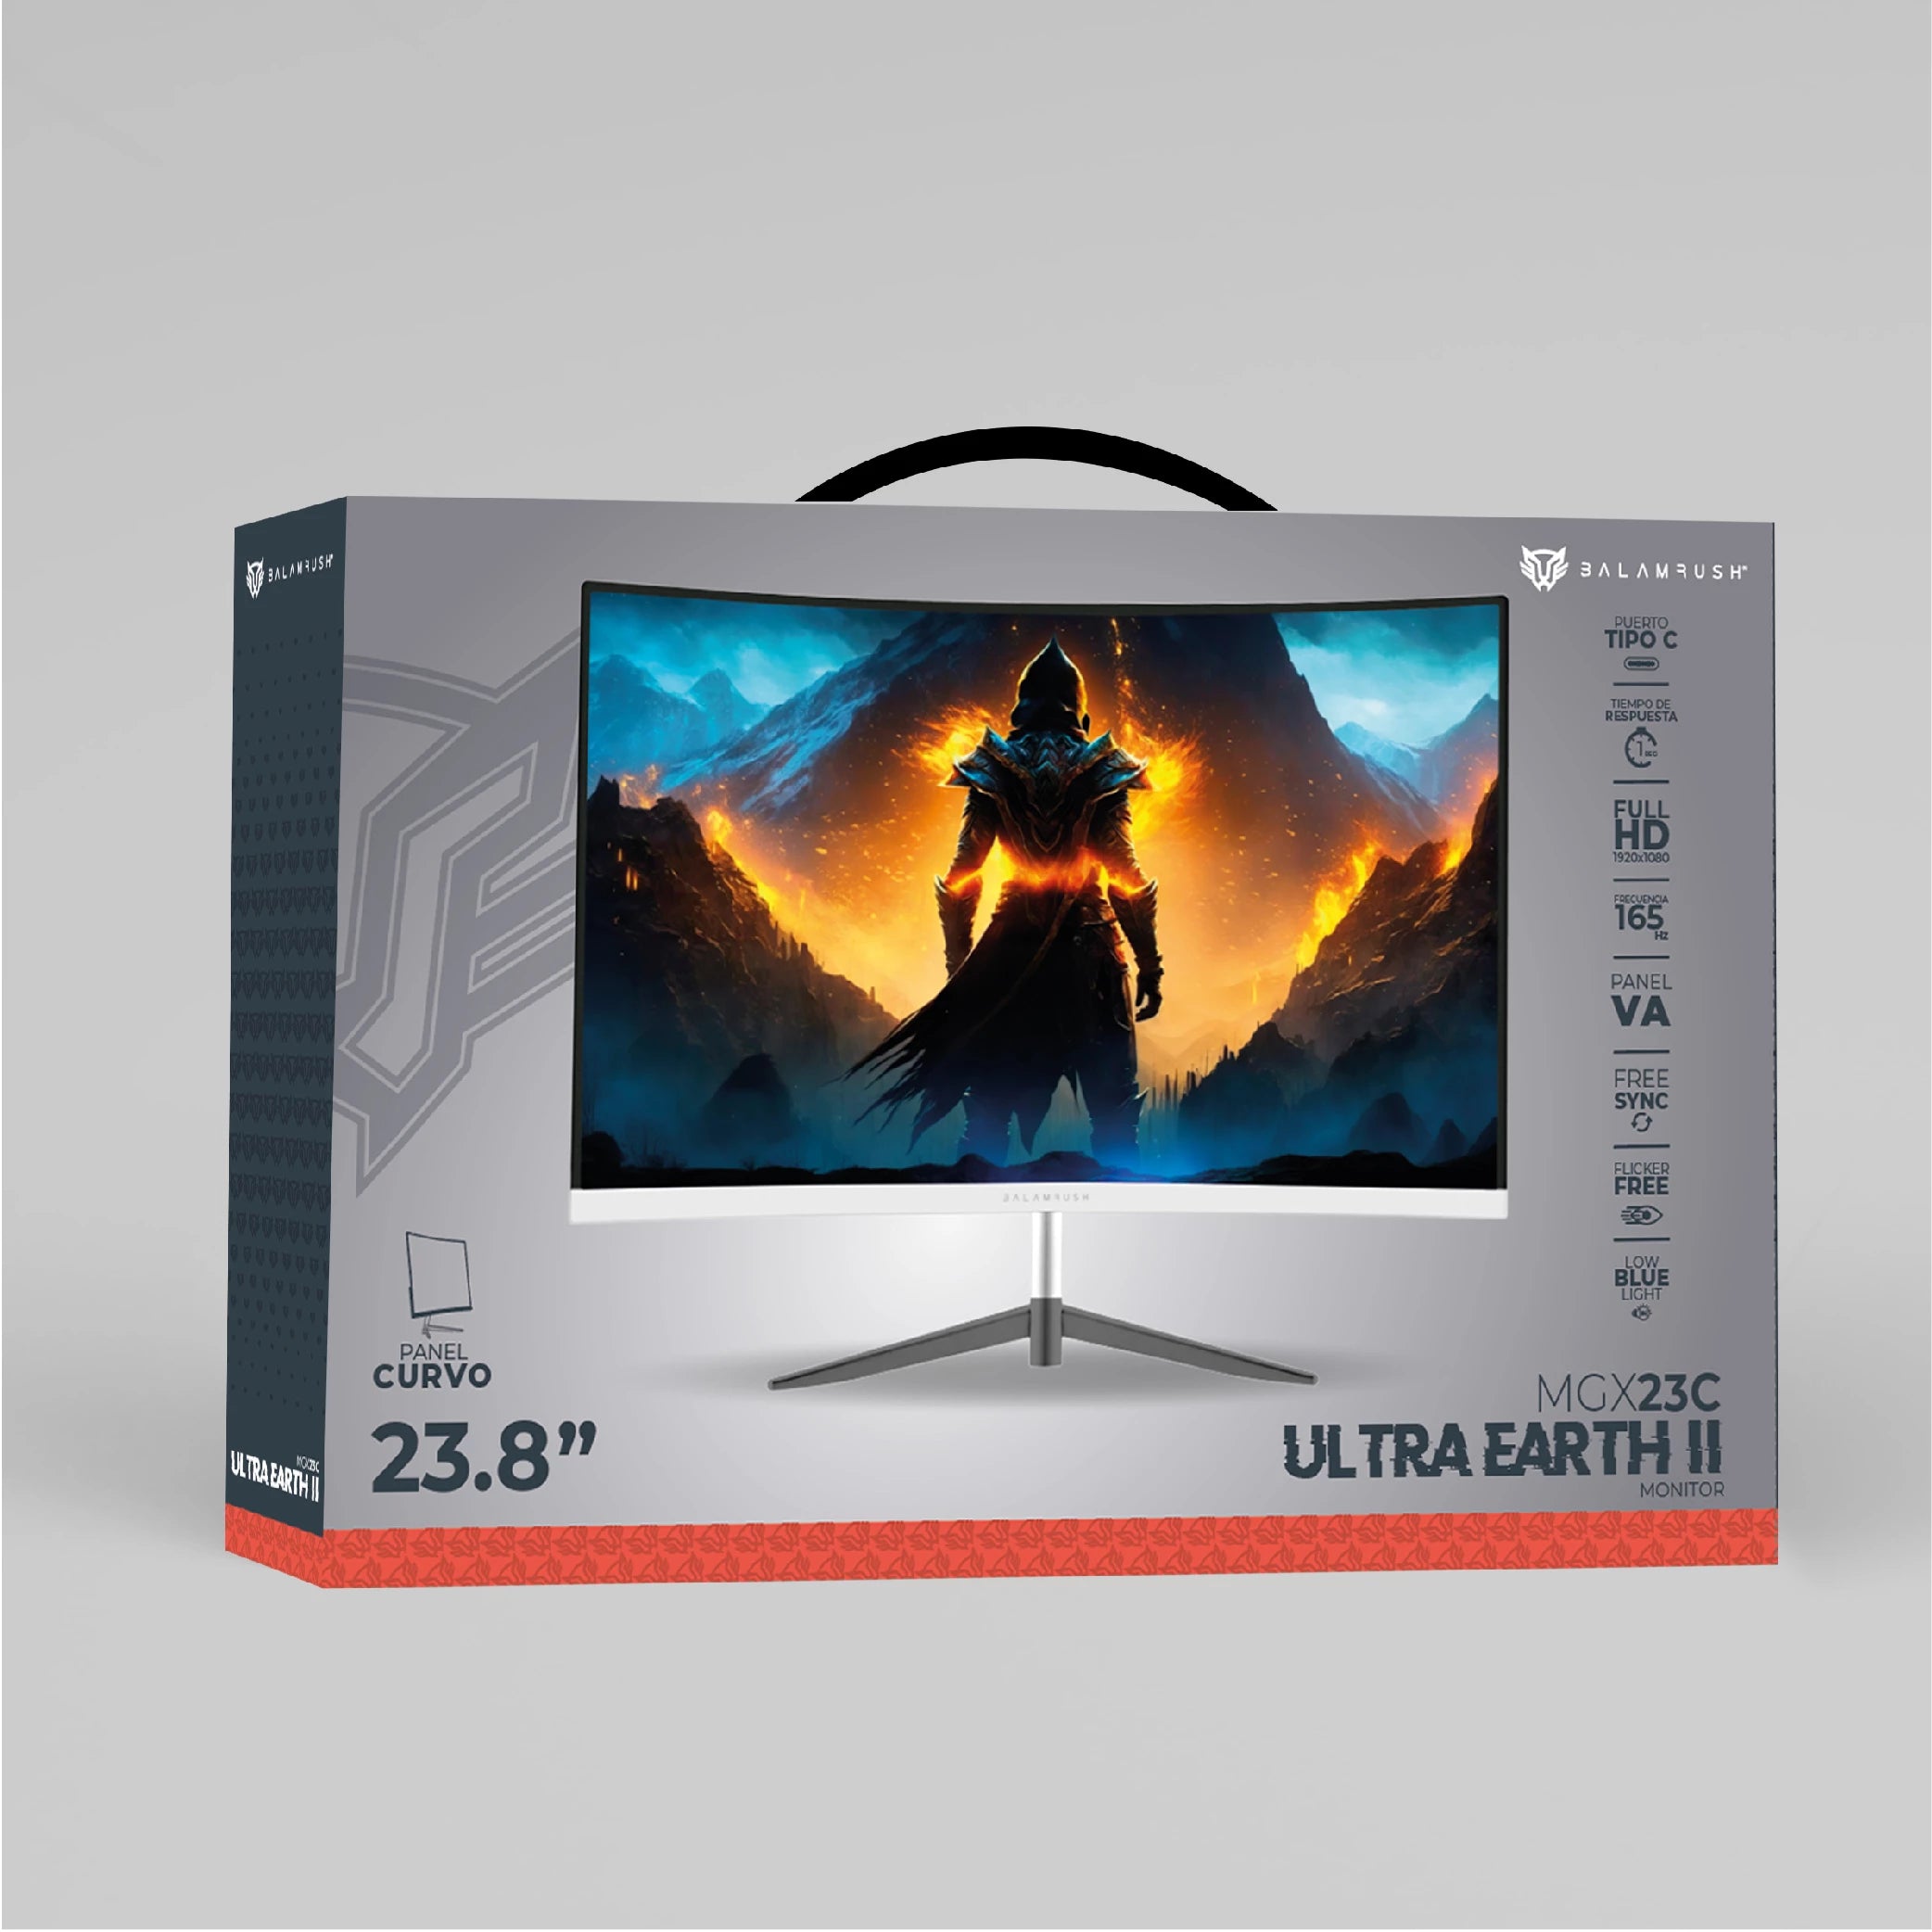 Monitor Gamer Curvo 23.8" Ultra Earth II MGX23C VA + 165Hz + 1ms + Full HD 1080p/HDMI + DP + TYPE-C 15W + 3.5mm + VESA 100 x 100 mm/Blanco